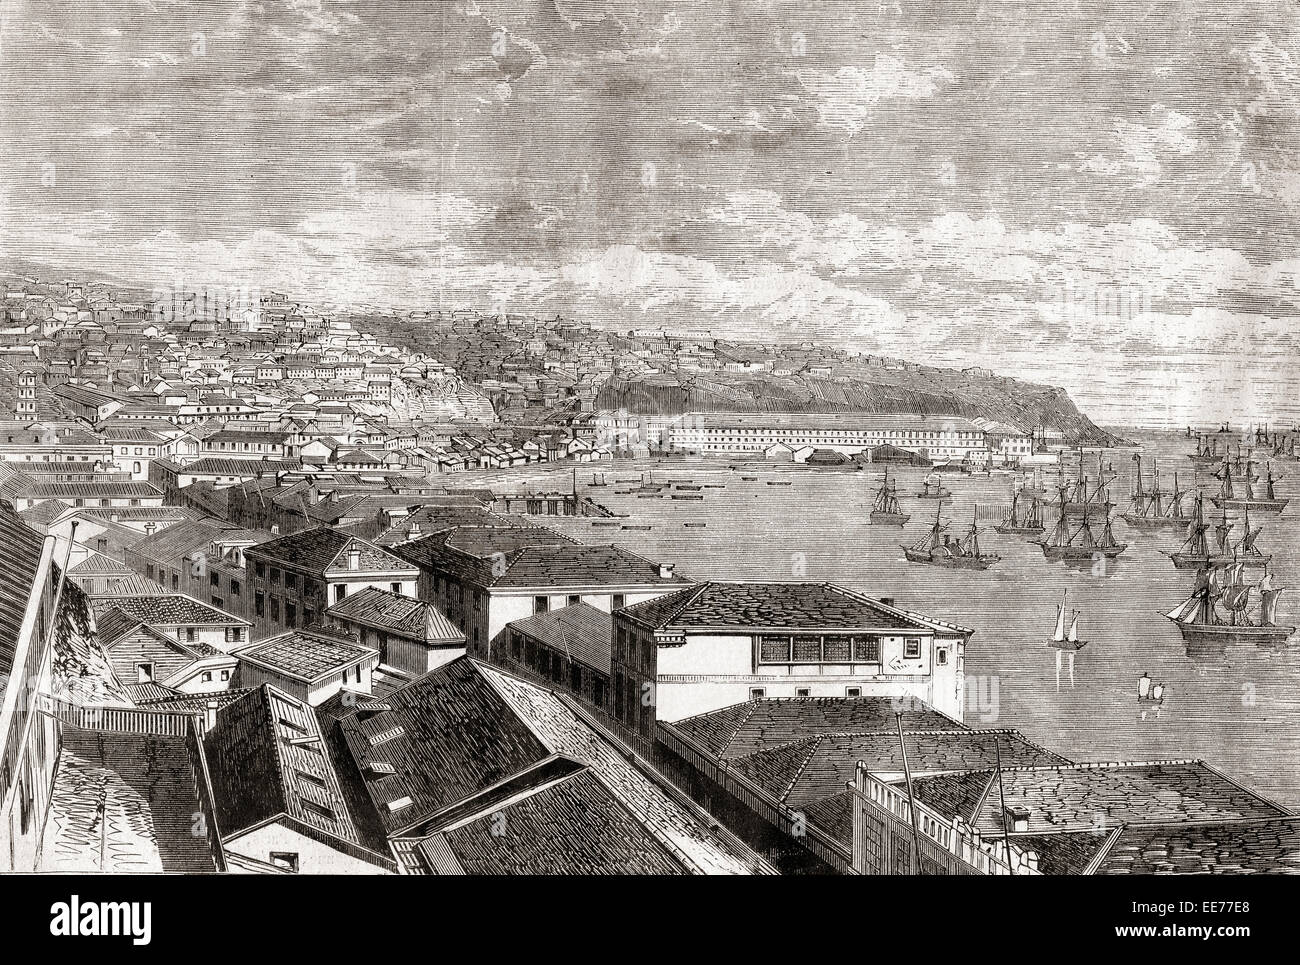 Valparaiso, Cile, America del Sud. La città e il porto nel tardo XIX secolo. Foto Stock